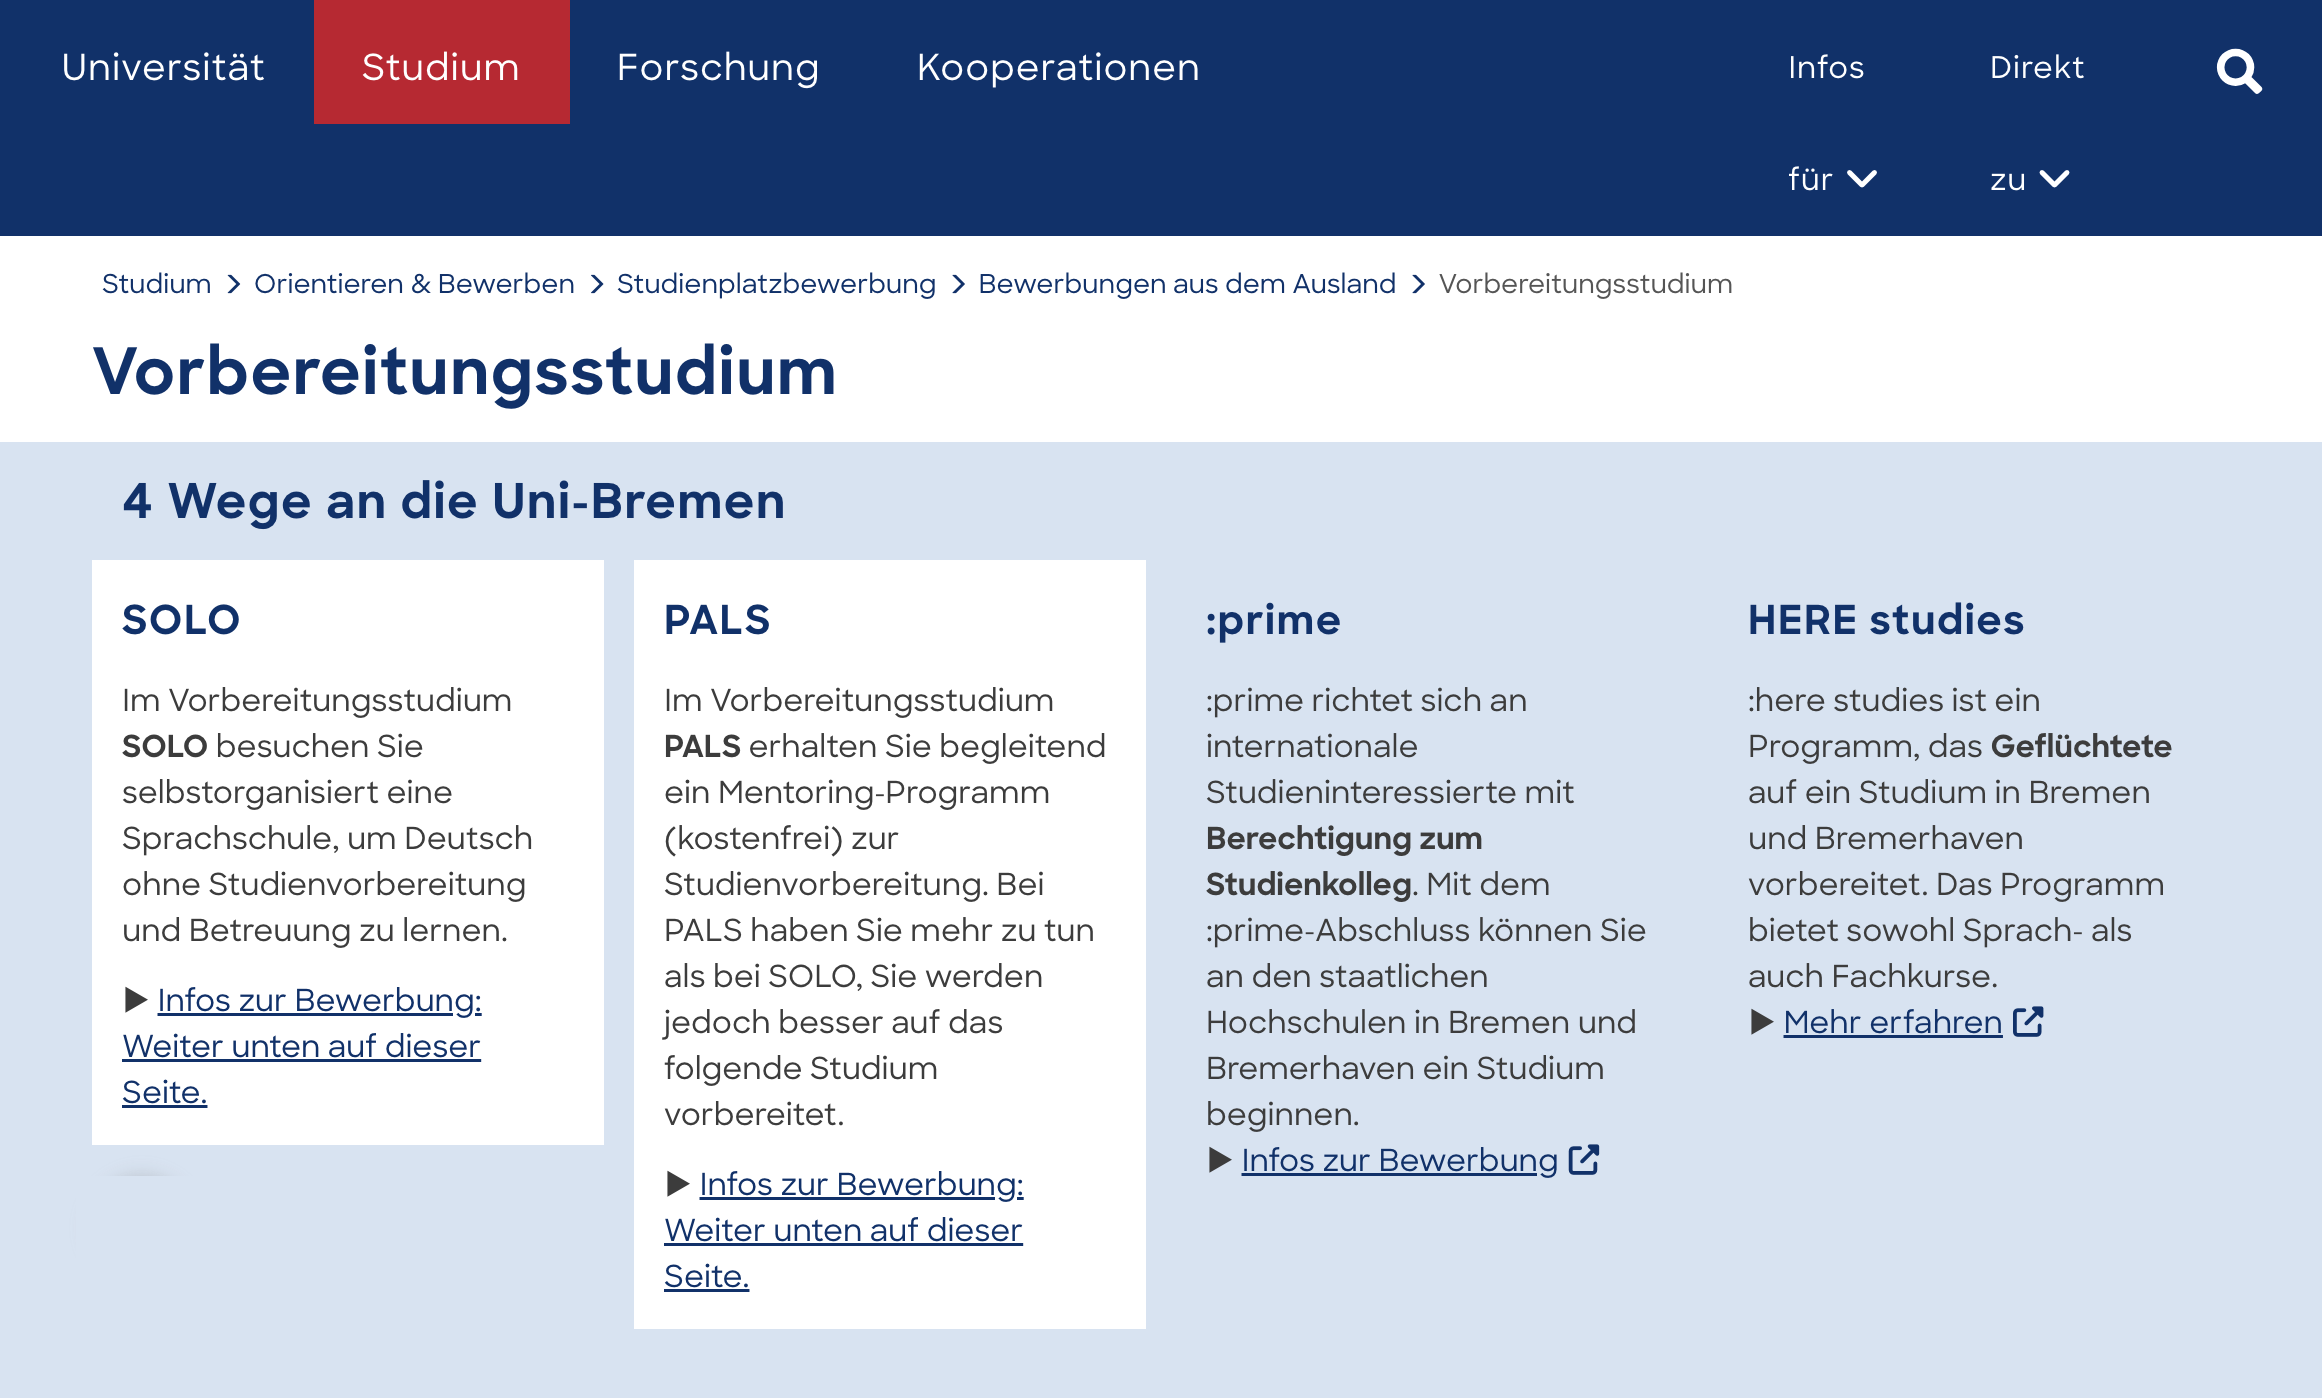 Университет Бремена предлагает несколько подготовительных программ: индивидуально или с наставником. Источник: uni-bremen.de